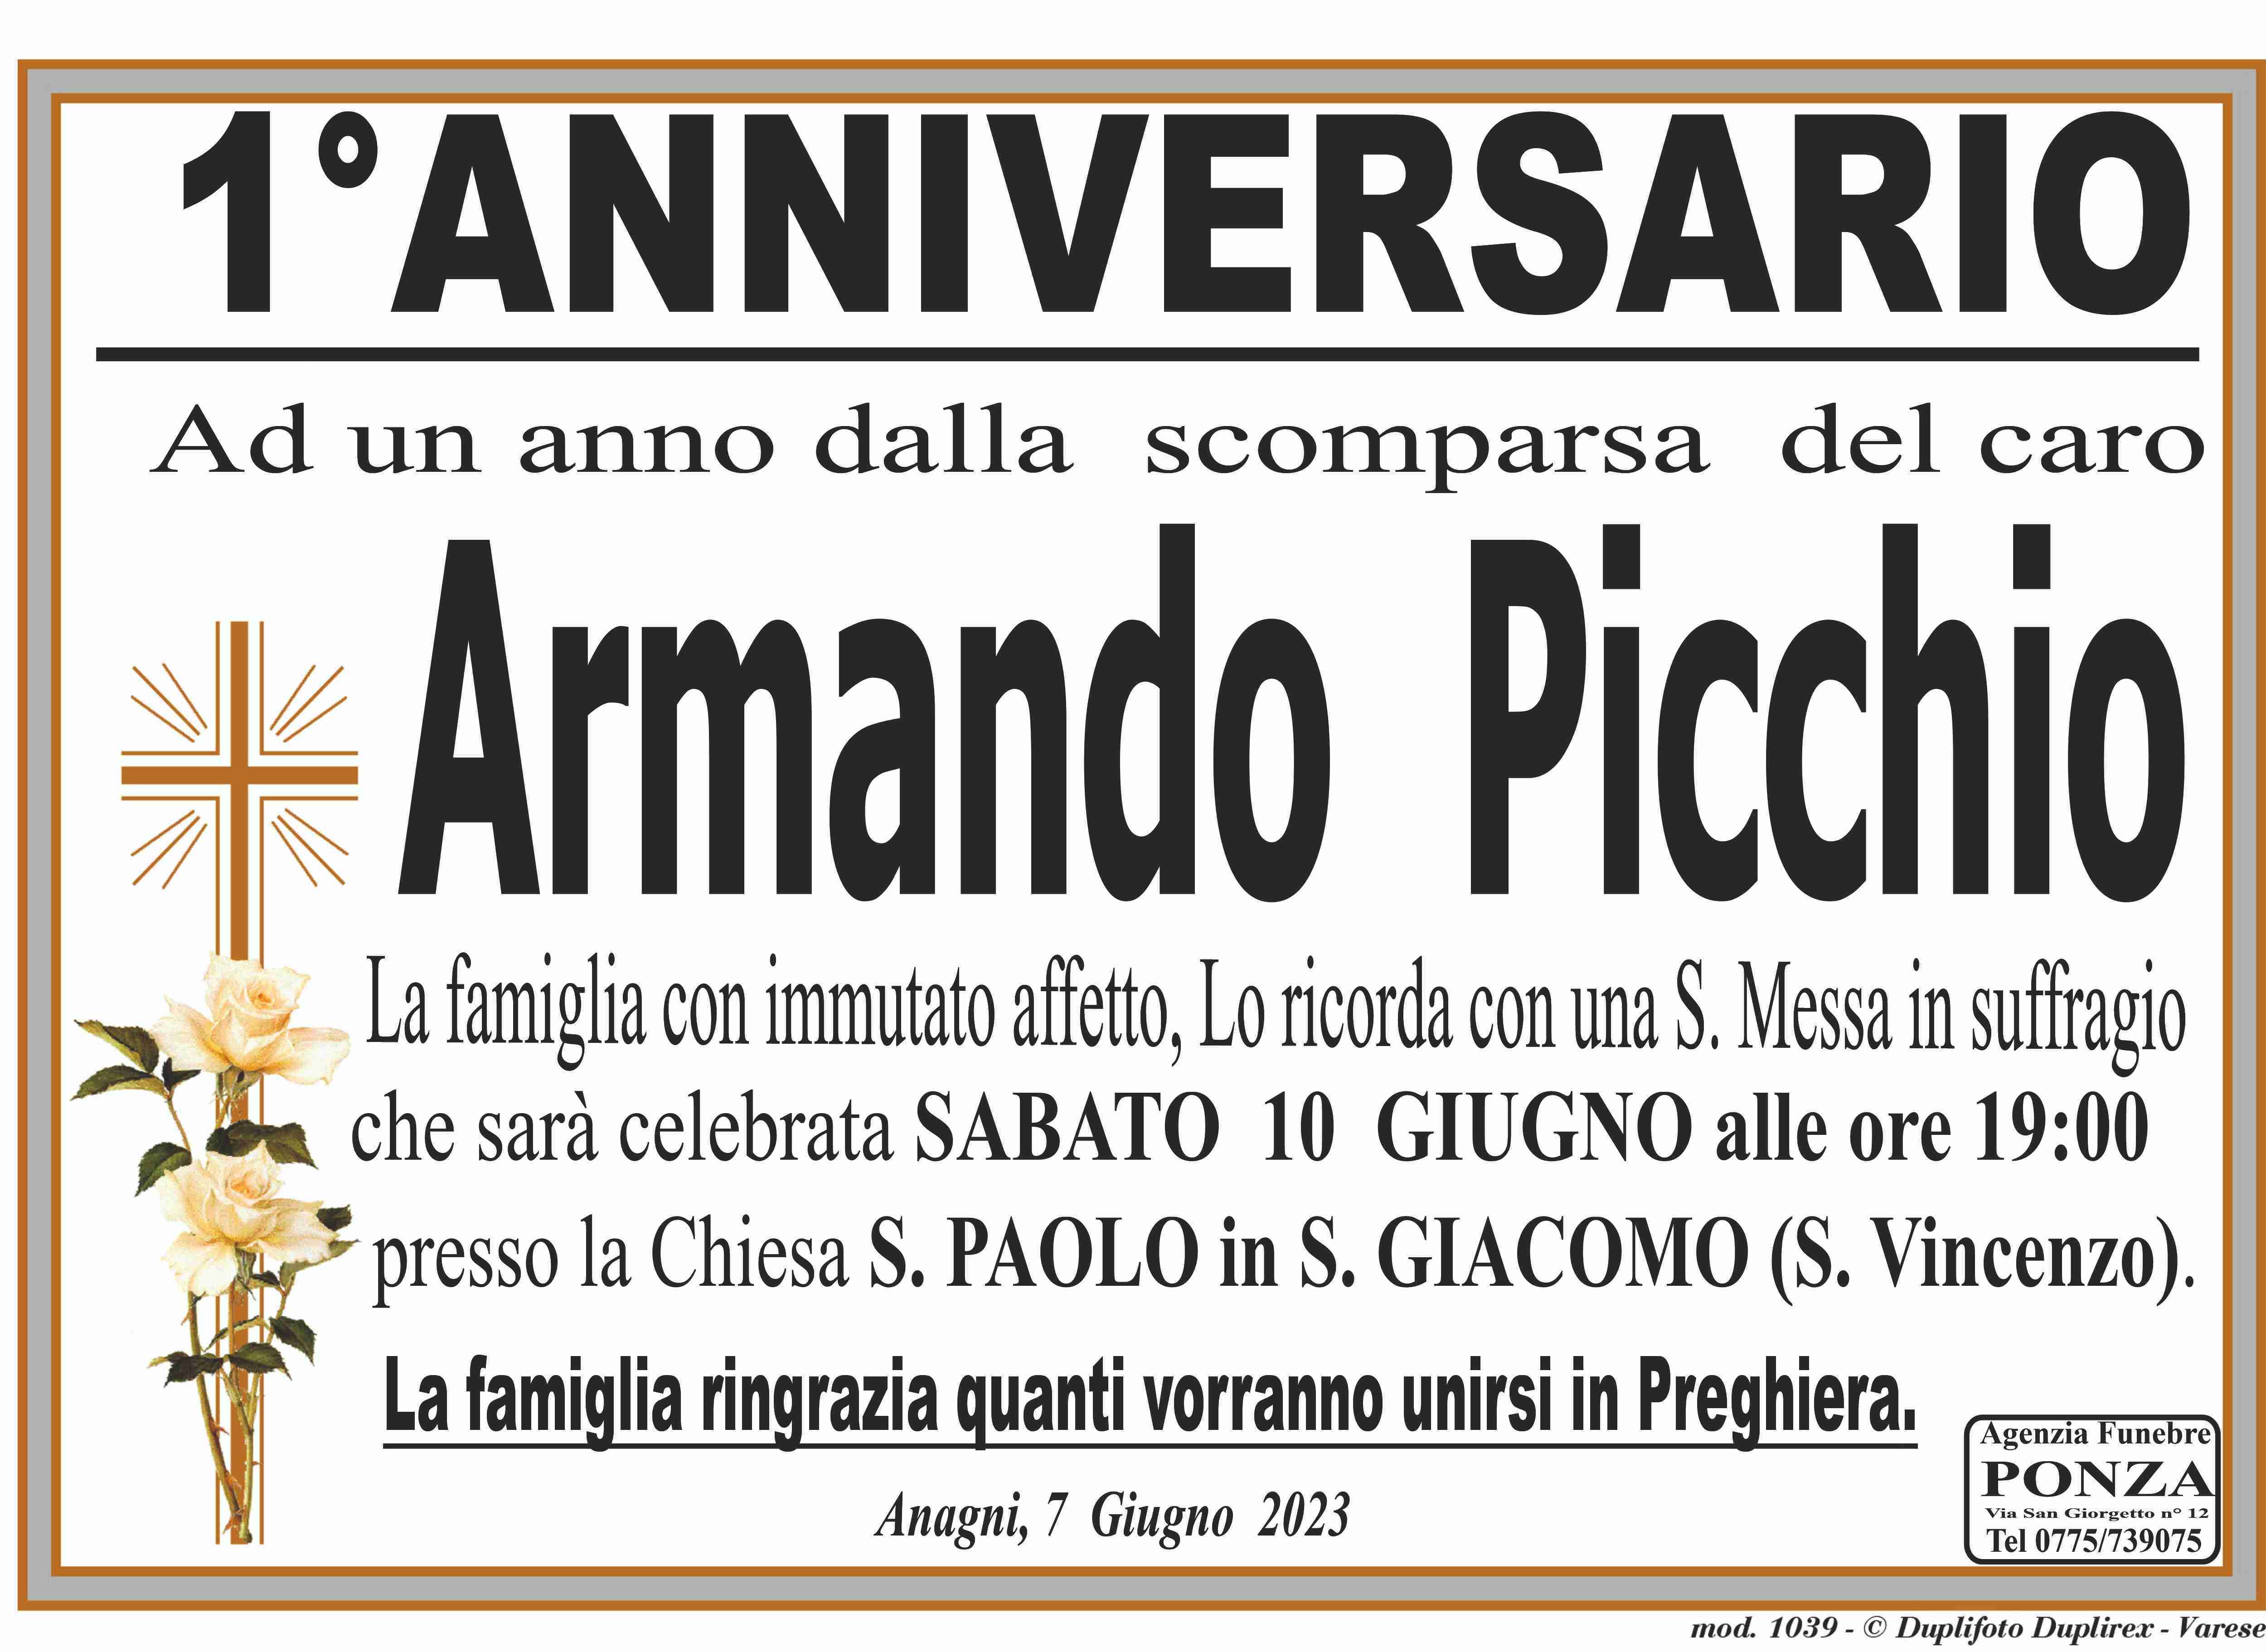 Armando Picchio